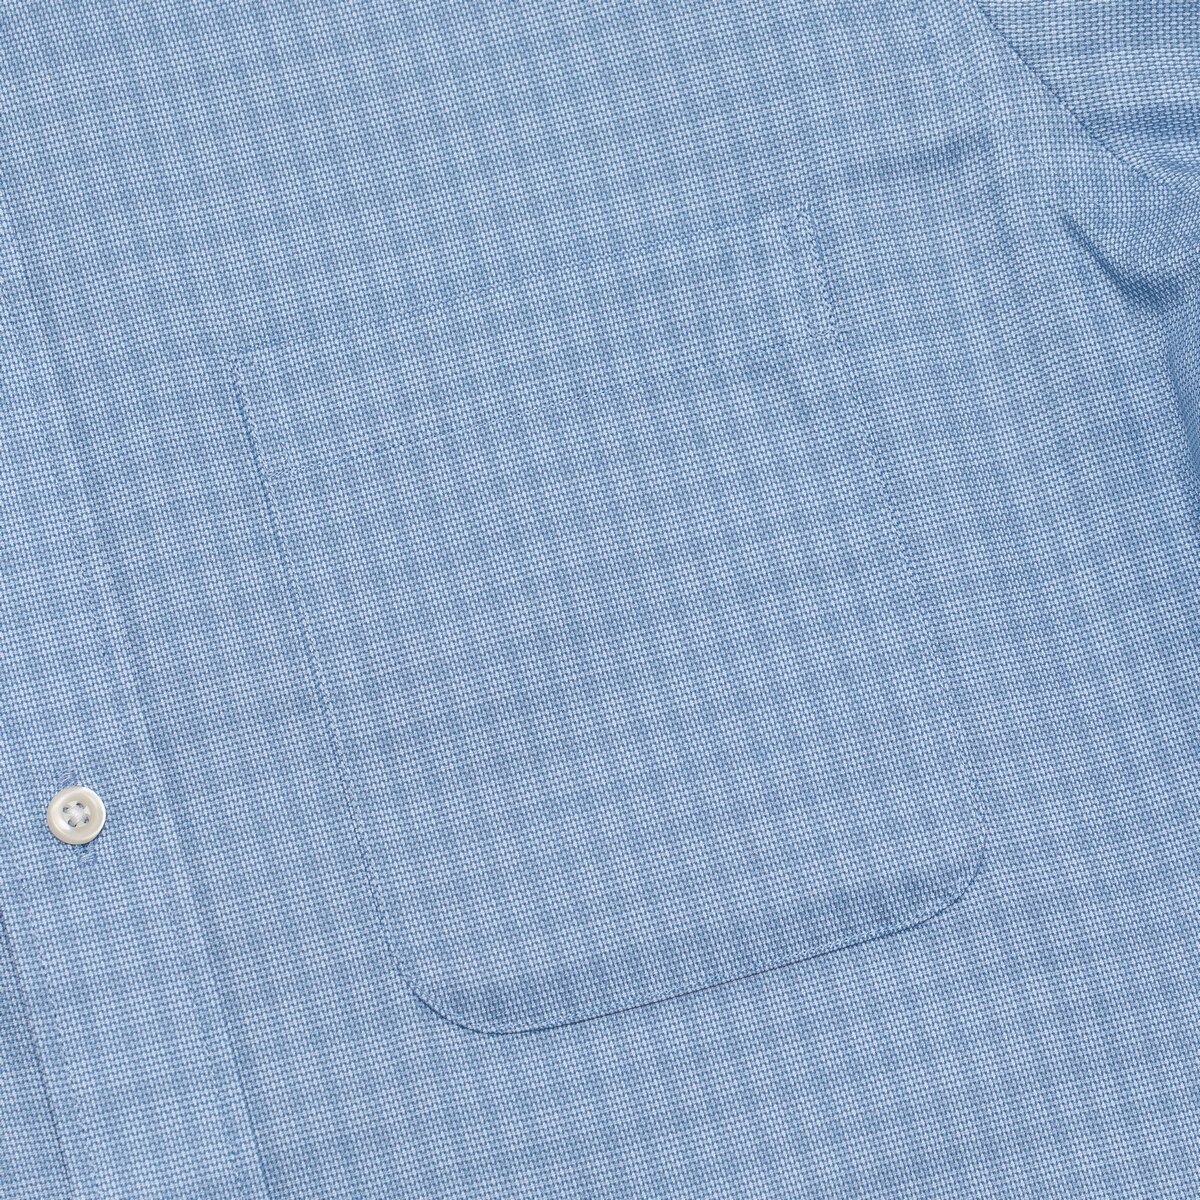 Kirkland Signature 科克蘭 男長袖鈕扣領印花襯衫 藍色格紋 領圍 17吋 X 袖長 34/35吋